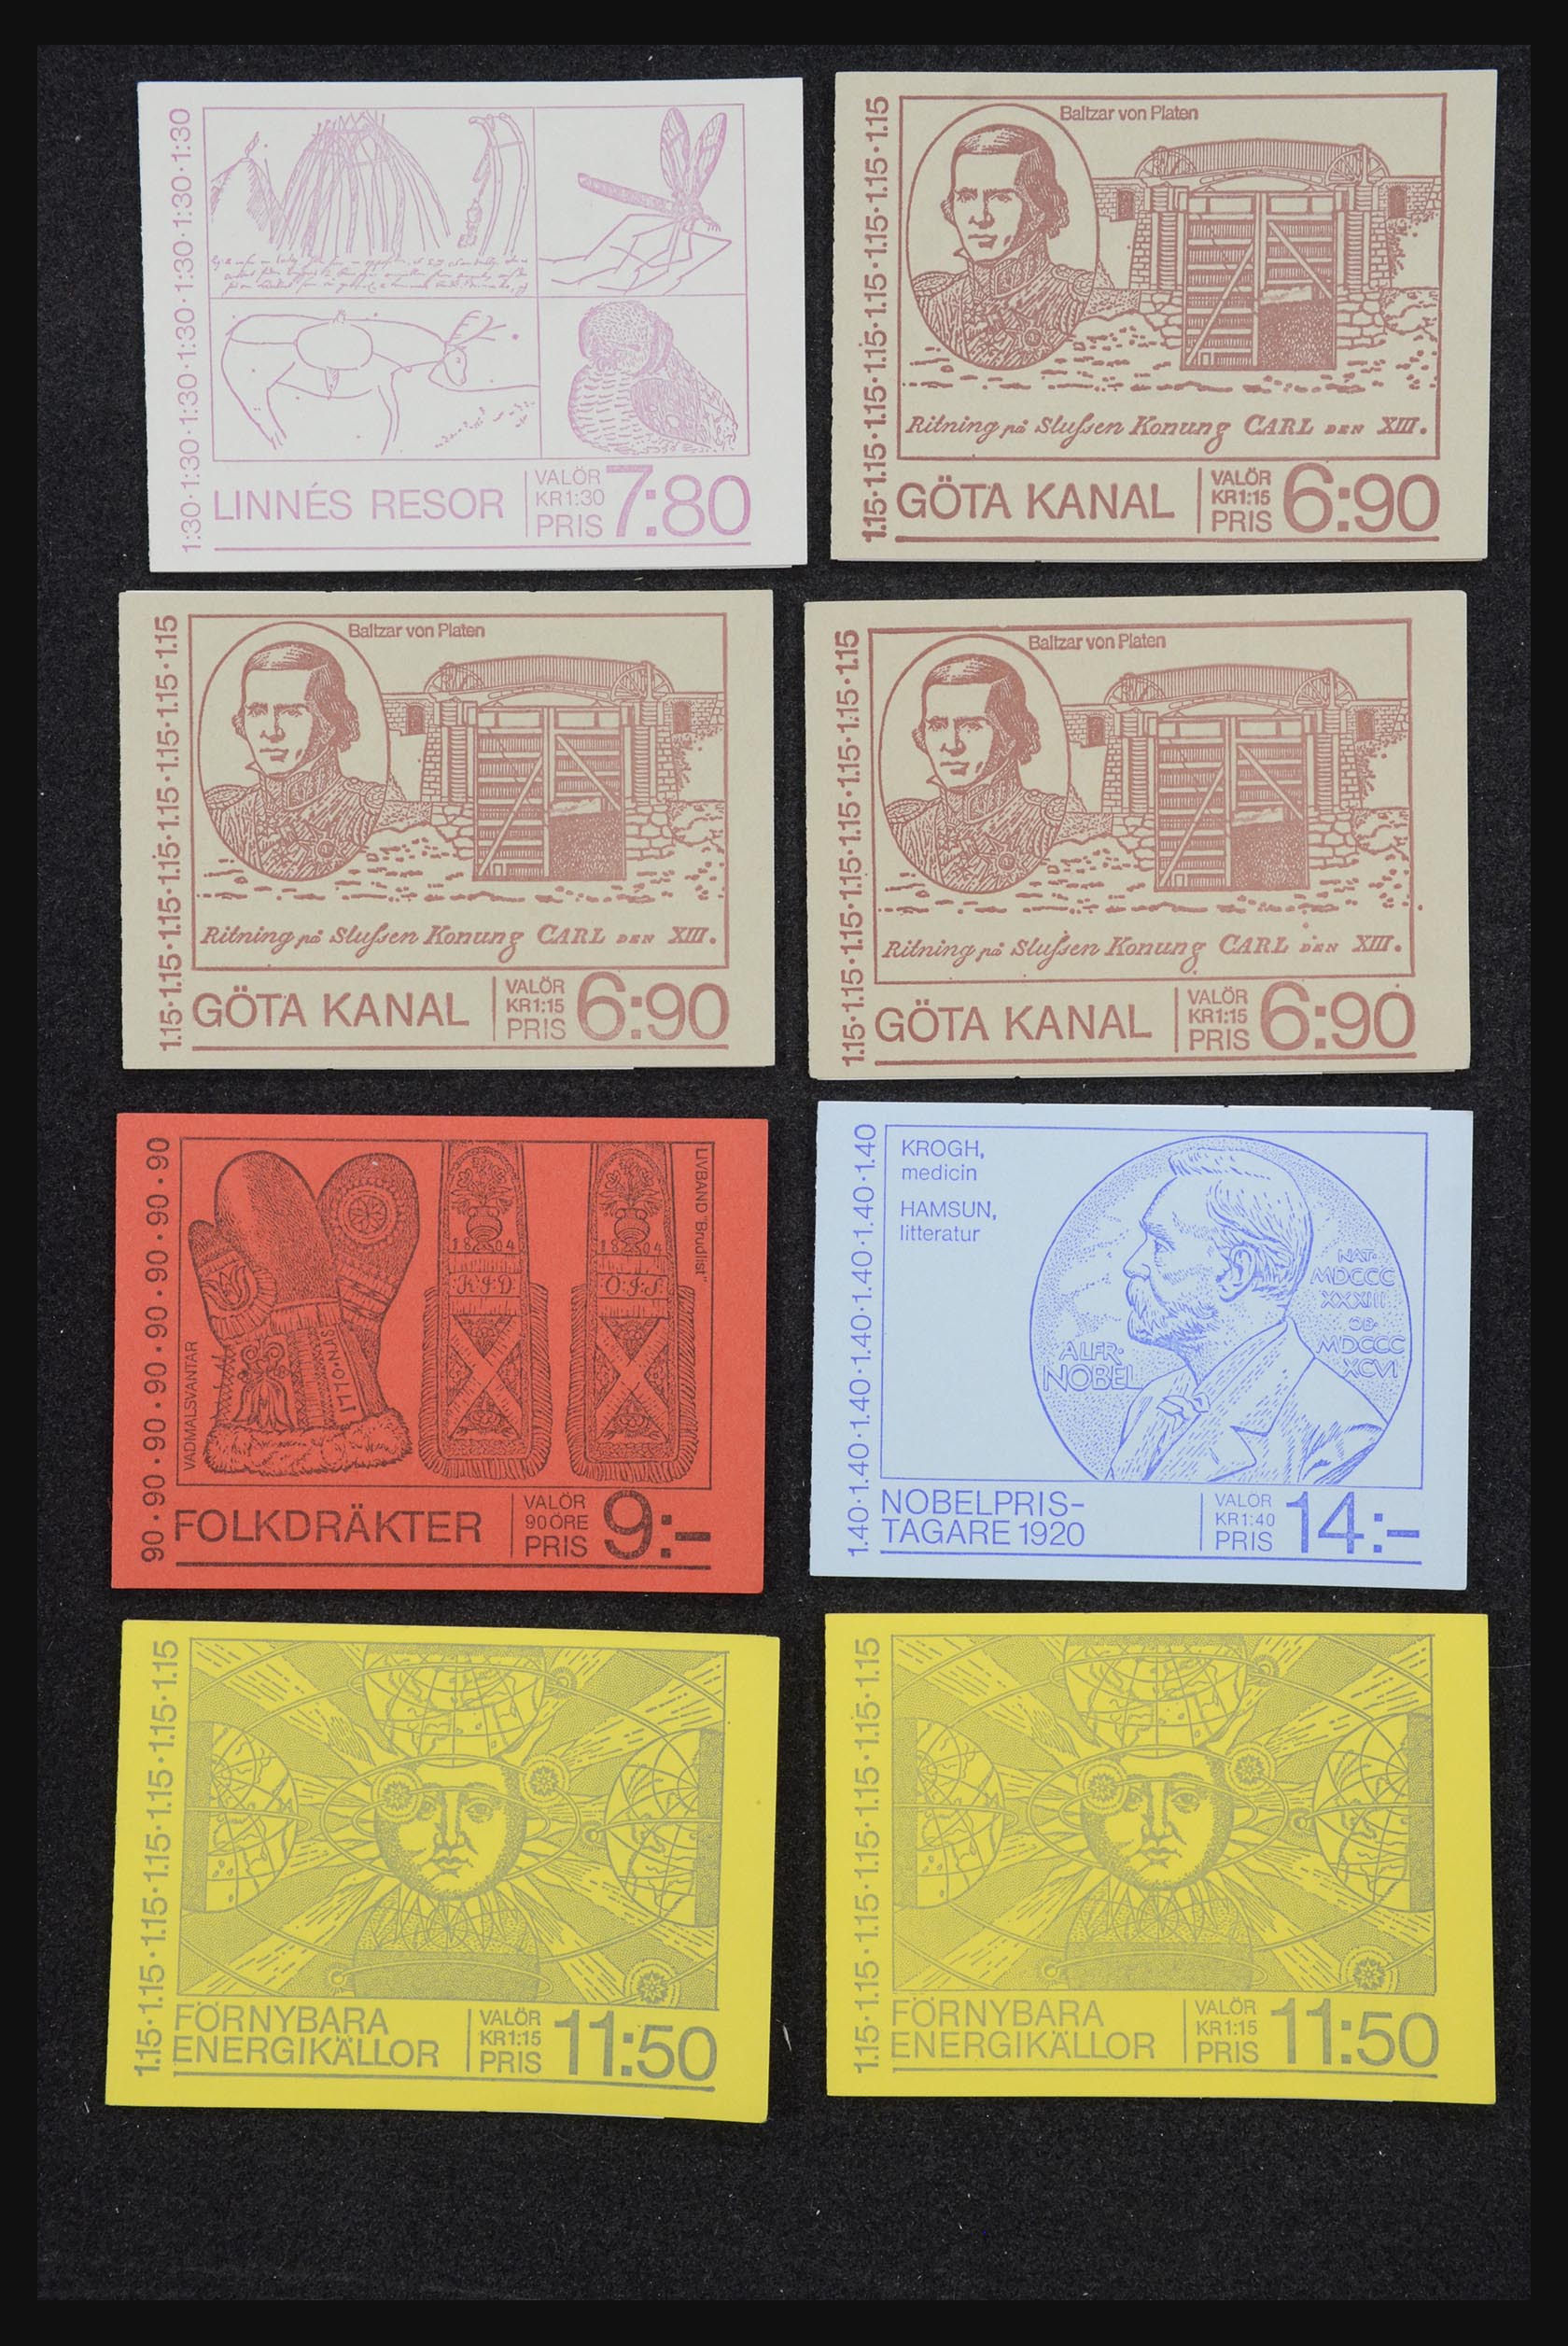 32026 063 - 32026 Sweden stampbooklets 1949-1990.